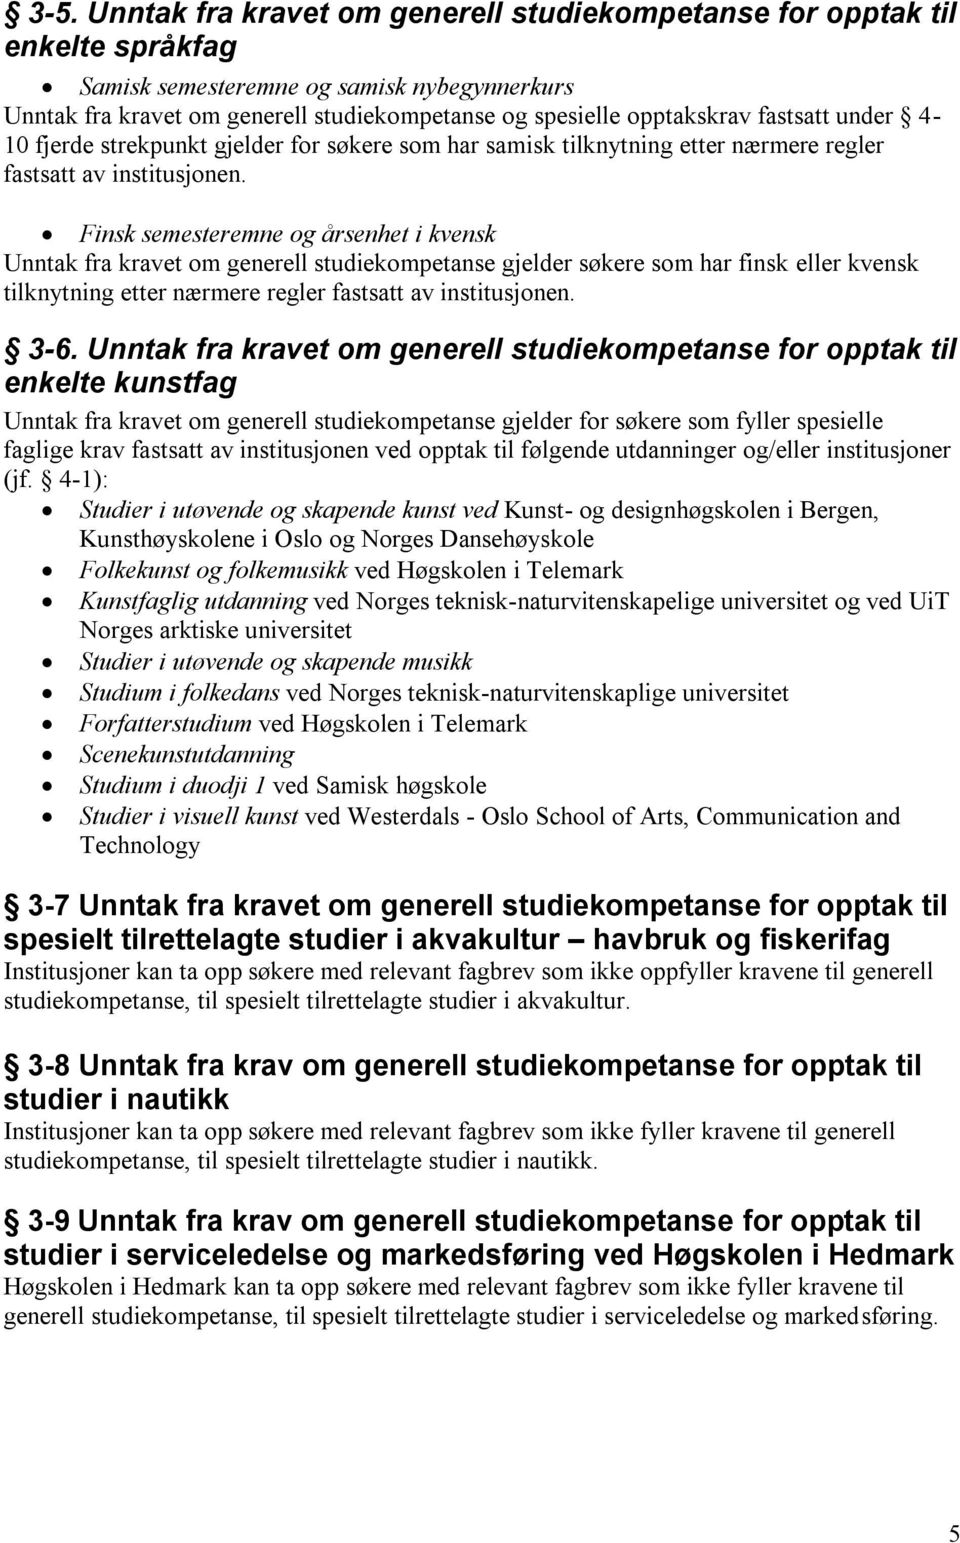 Finsk semesteremne og årsenhet i kvensk Unntak fra kravet om generell studiekompetanse gjelder søkere som har finsk eller kvensk tilknytning etter nærmere regler fastsatt av institusjonen. 3-6.